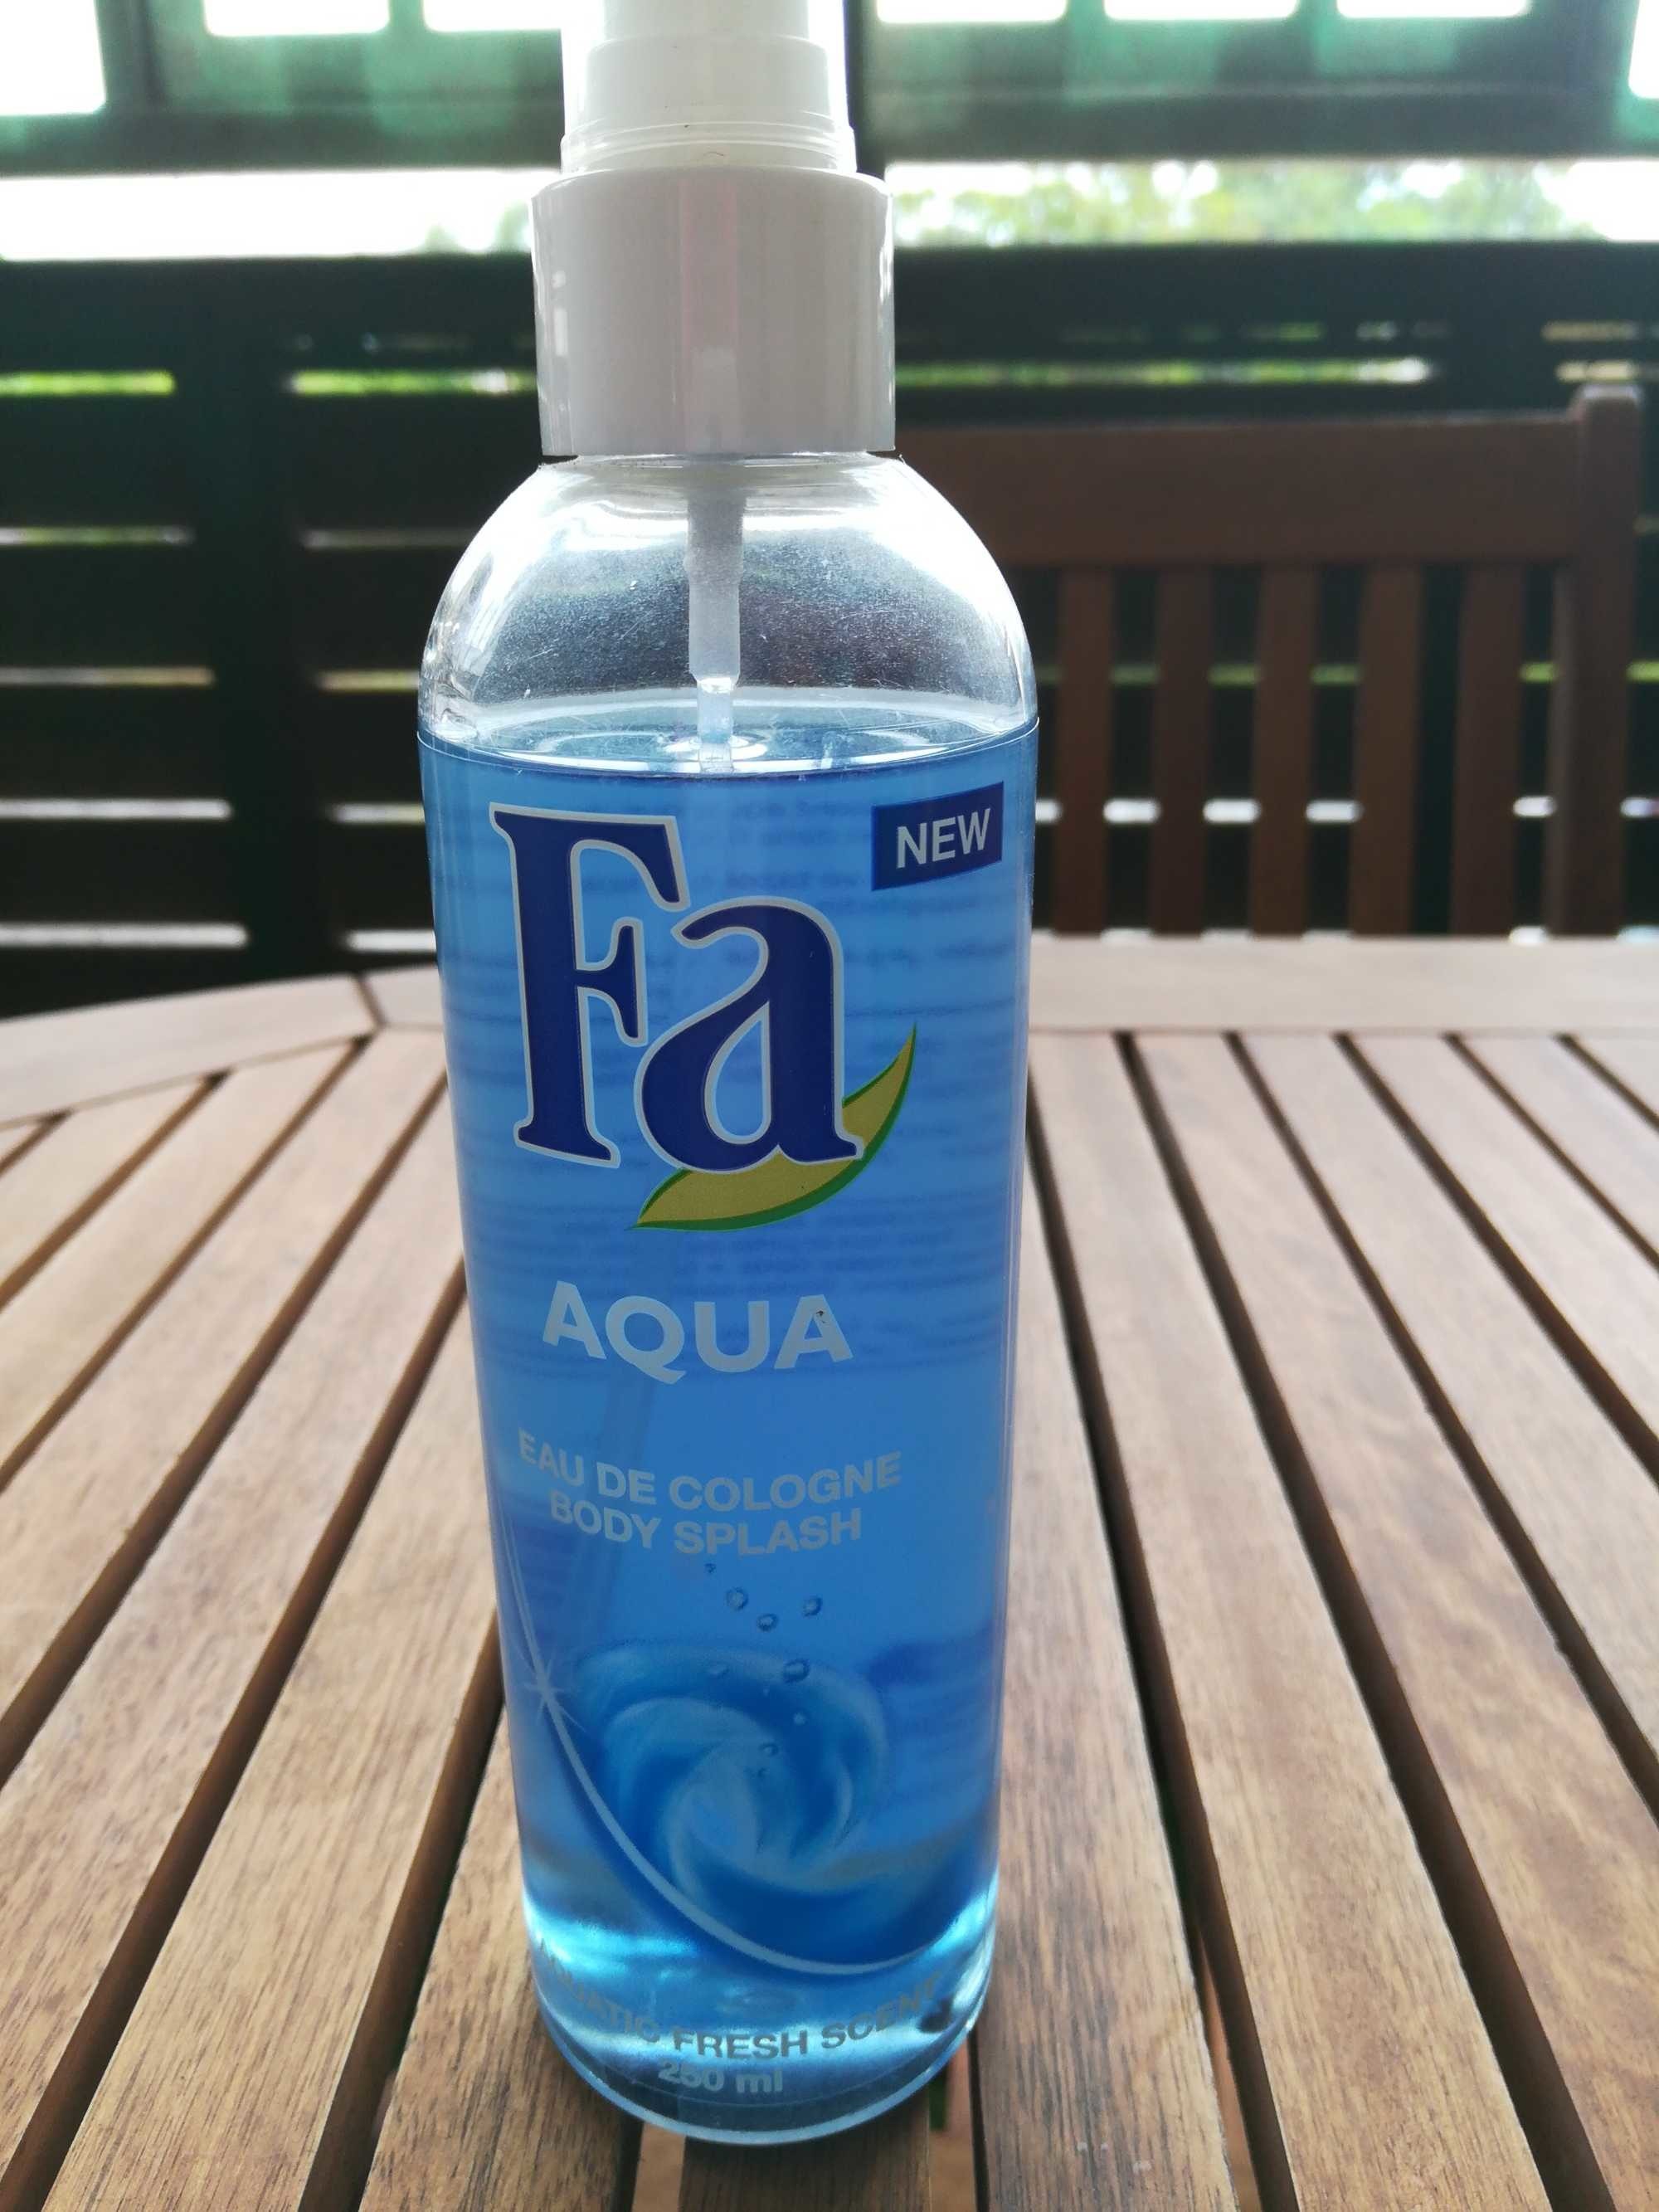 Aqua eau de cologne - Produkt - fr